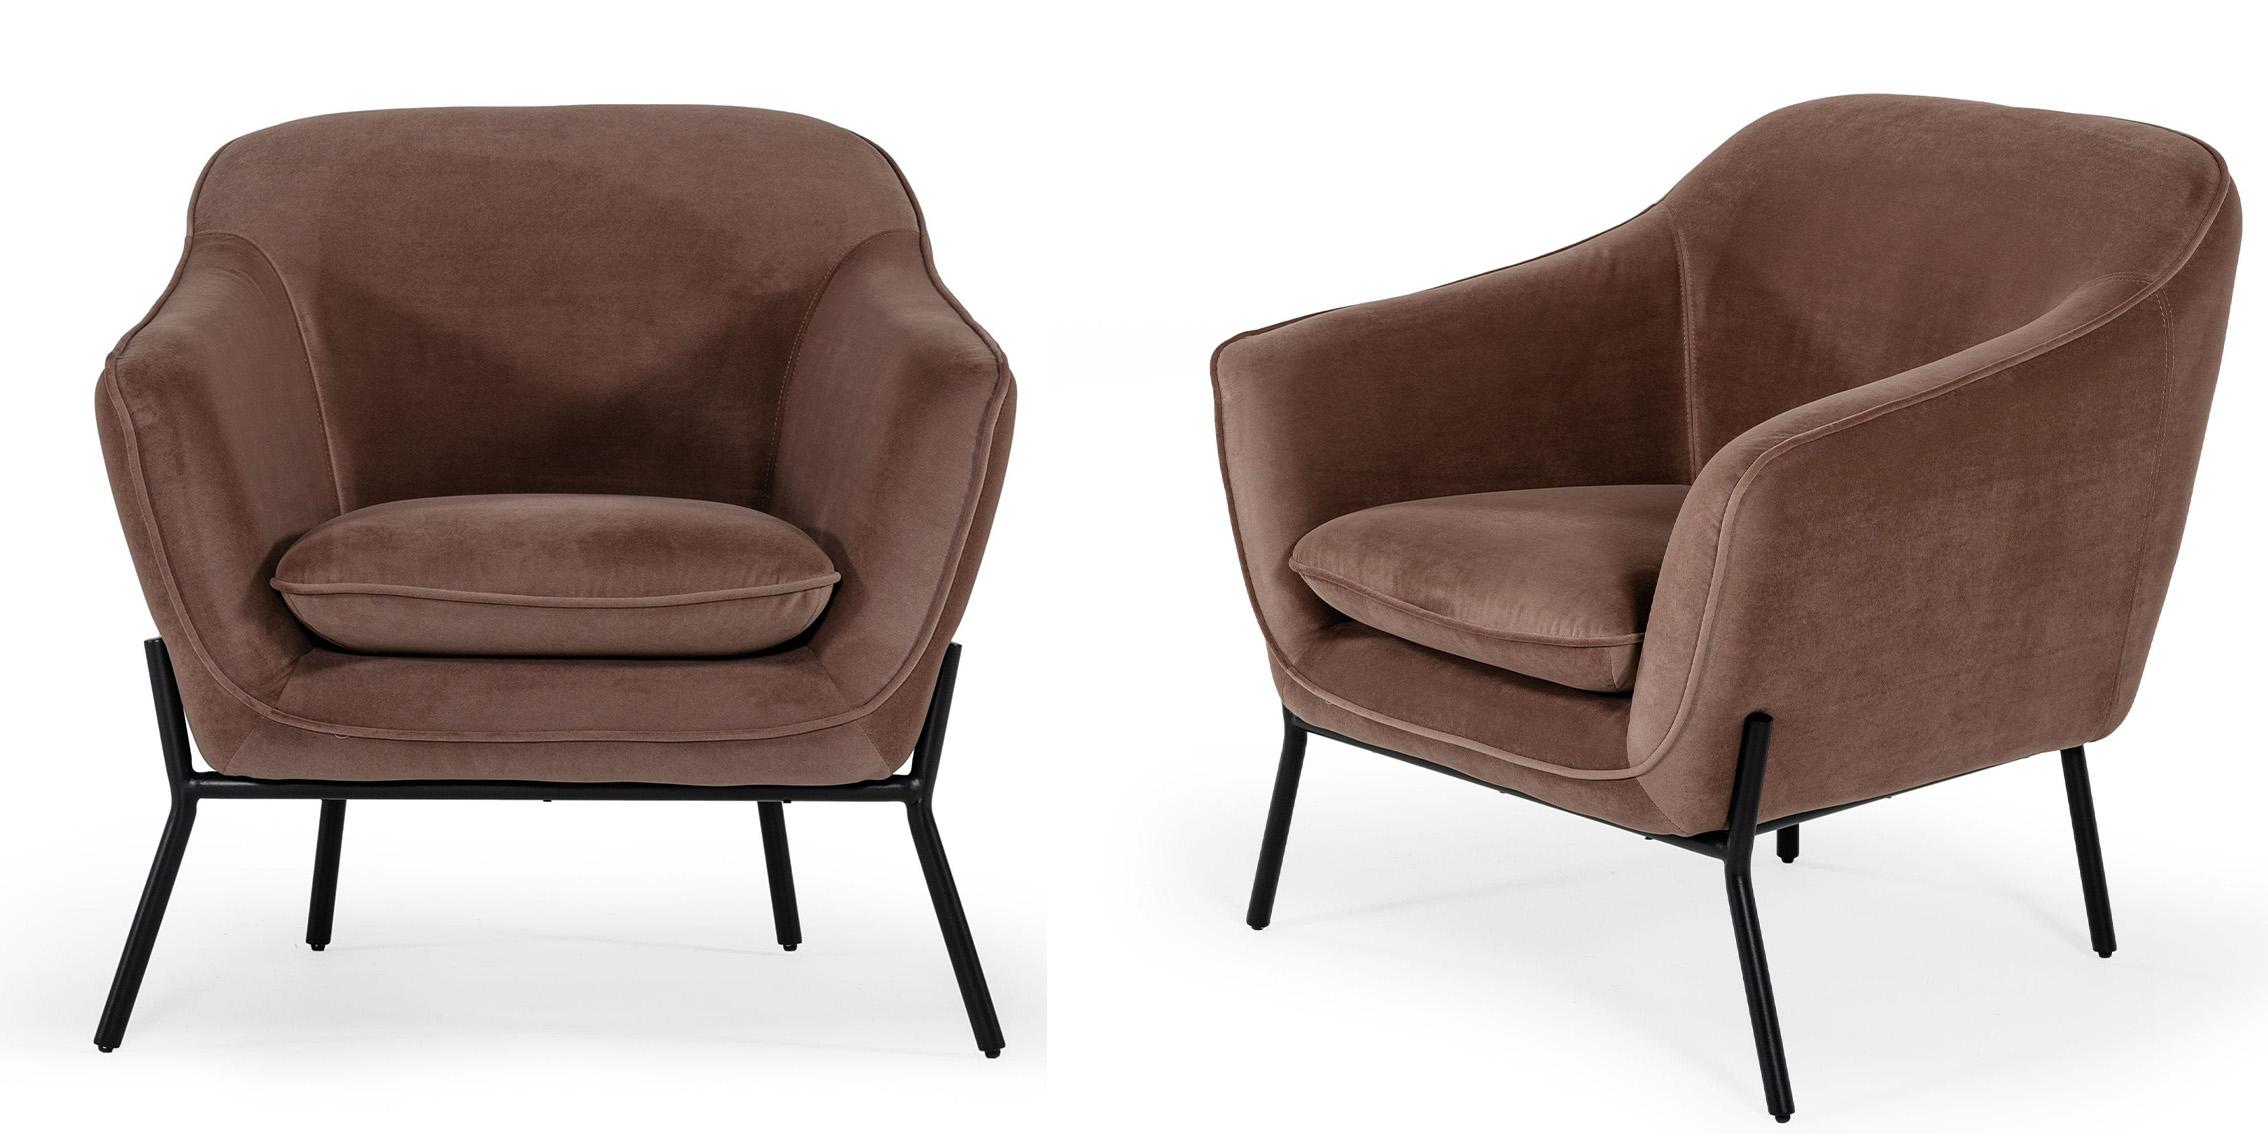 

    
Taupe Velvet Armchair Set 2Pcs Modrest Joiner VIG Modern Contemporary
